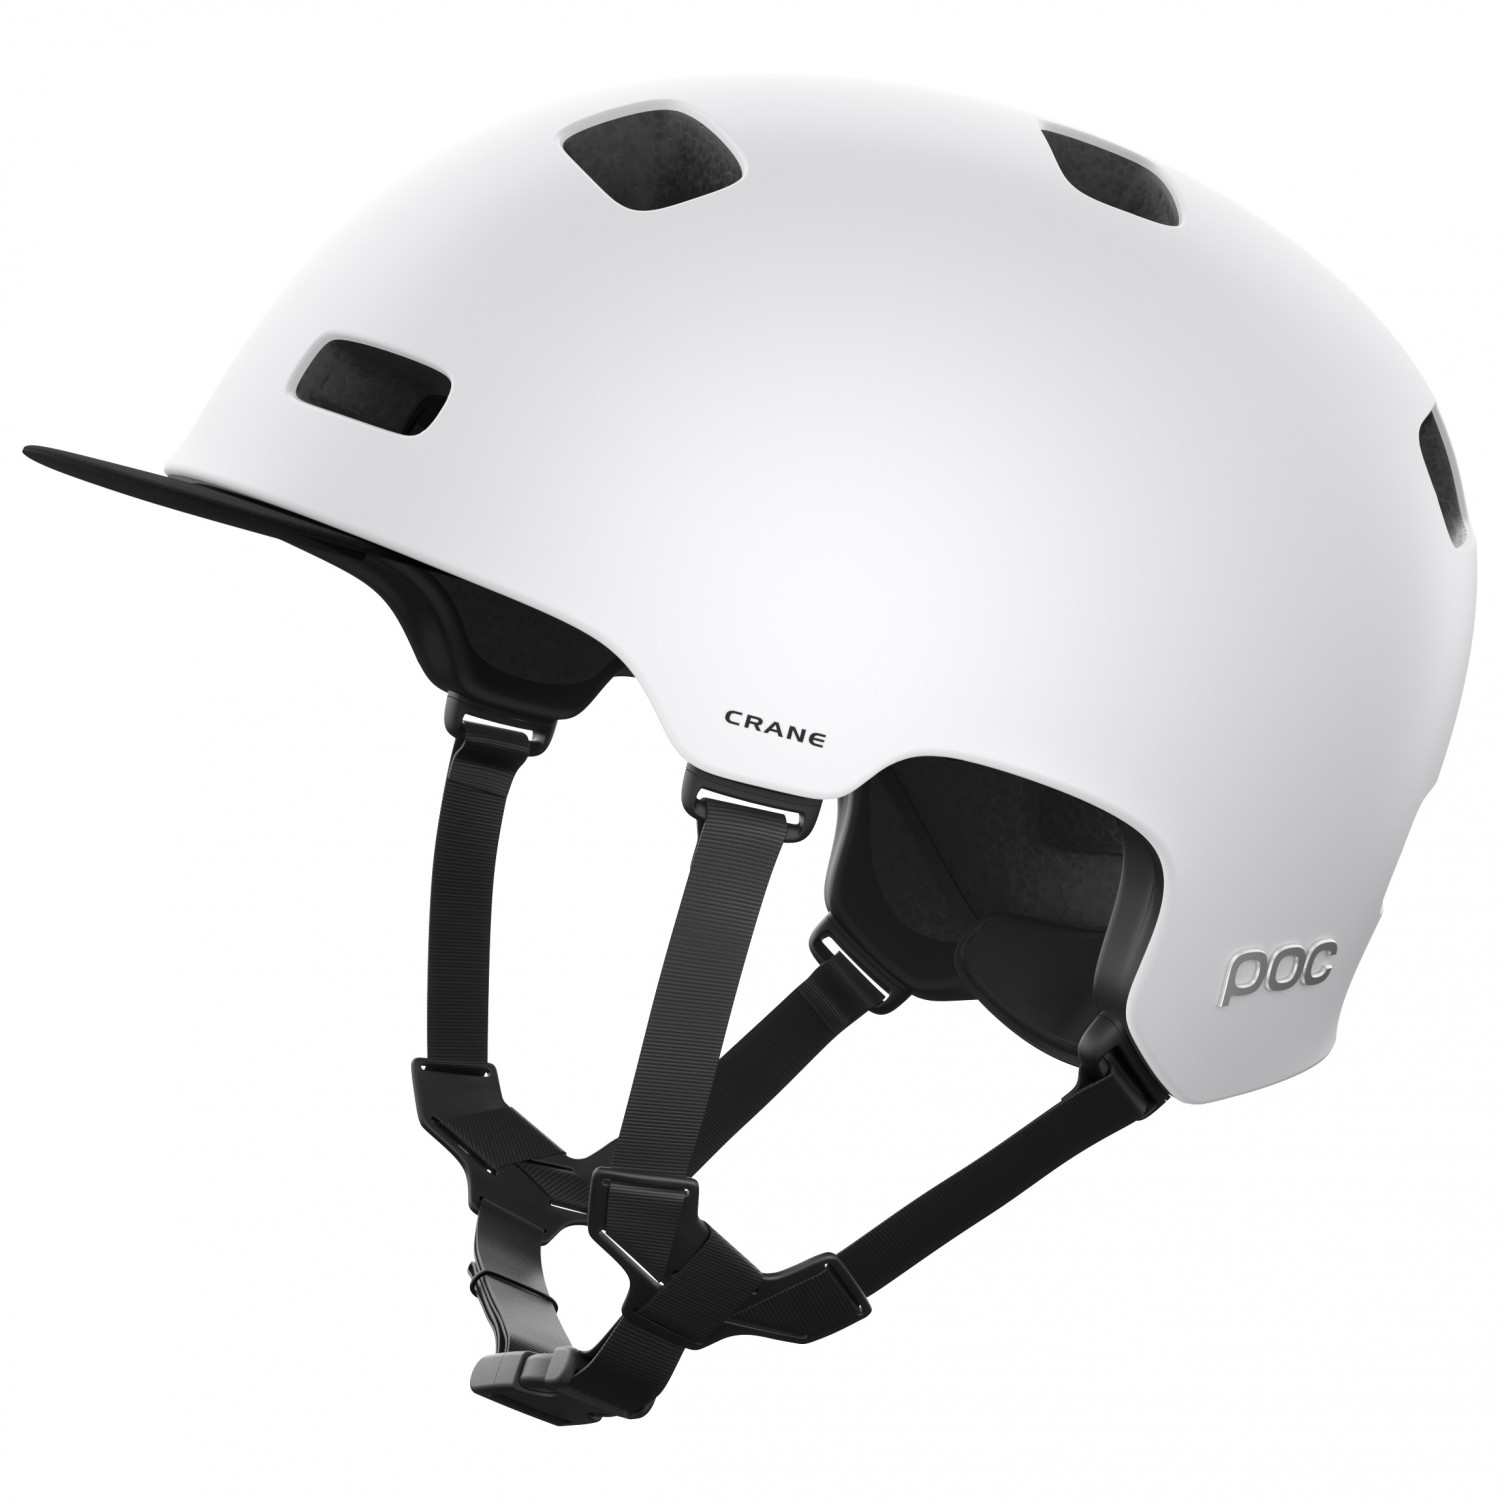 Велосипедный шлем Poc Crane Mips, цвет Hydrogen White Matt